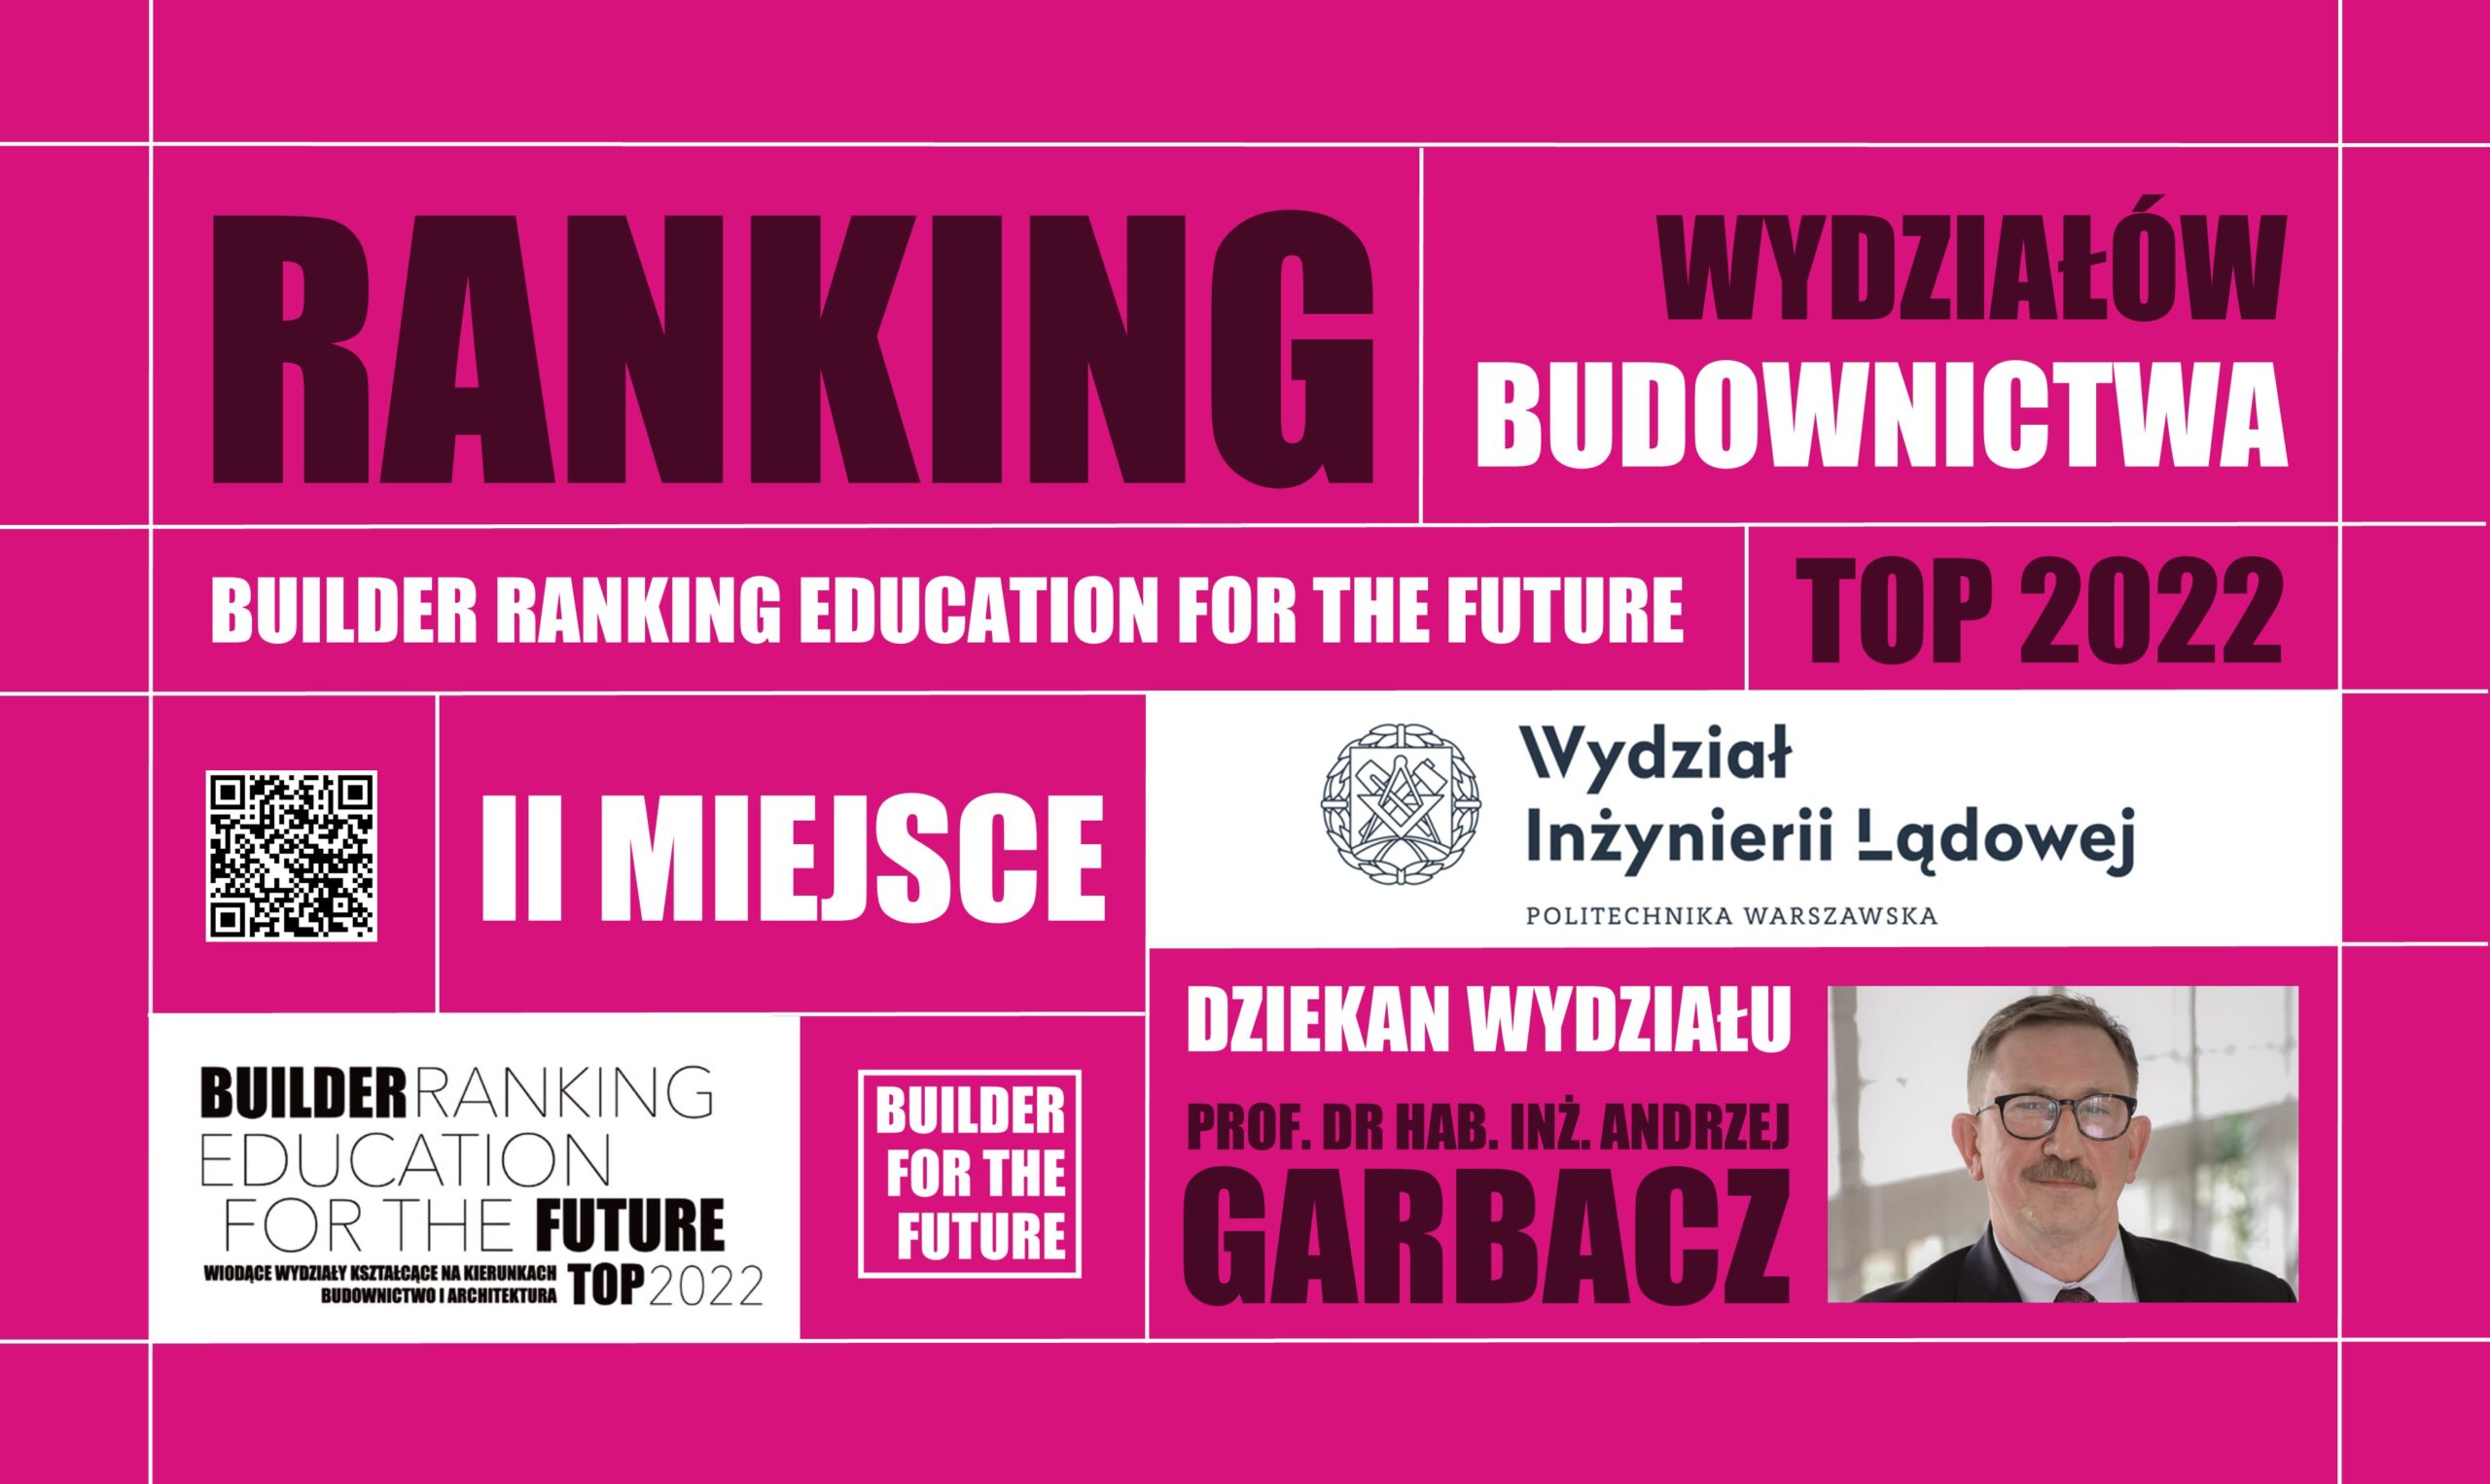 II MIEJSCE W RANKINGU WYDZIAŁÓW BUDOWNICTWA – BUILDER RANKING EDUCATION FOR THE FUTURE TOP 2022